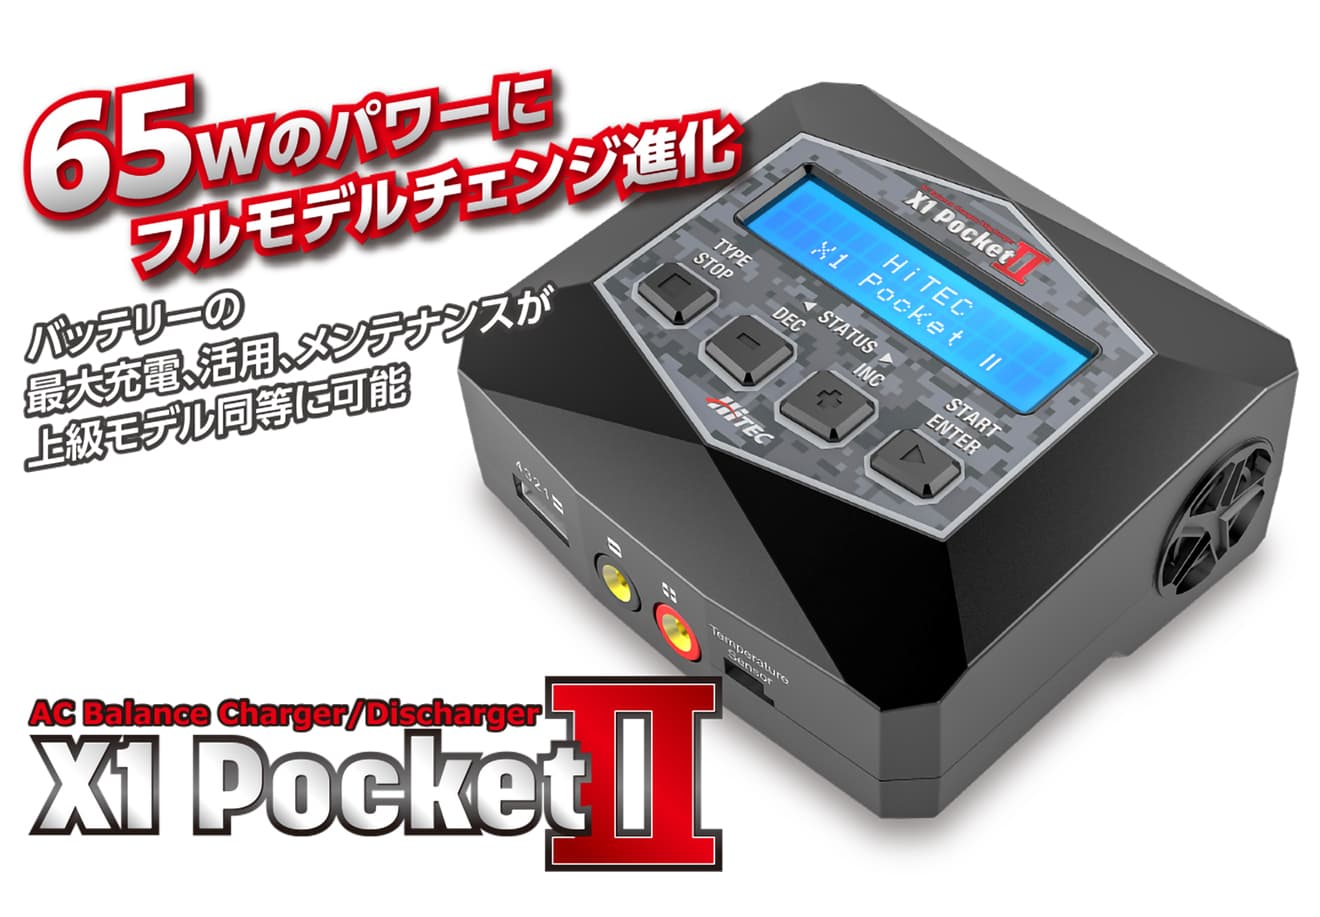 ハイテック ACバランス充・放電器 X1 PocketⅡ【レターパック可】